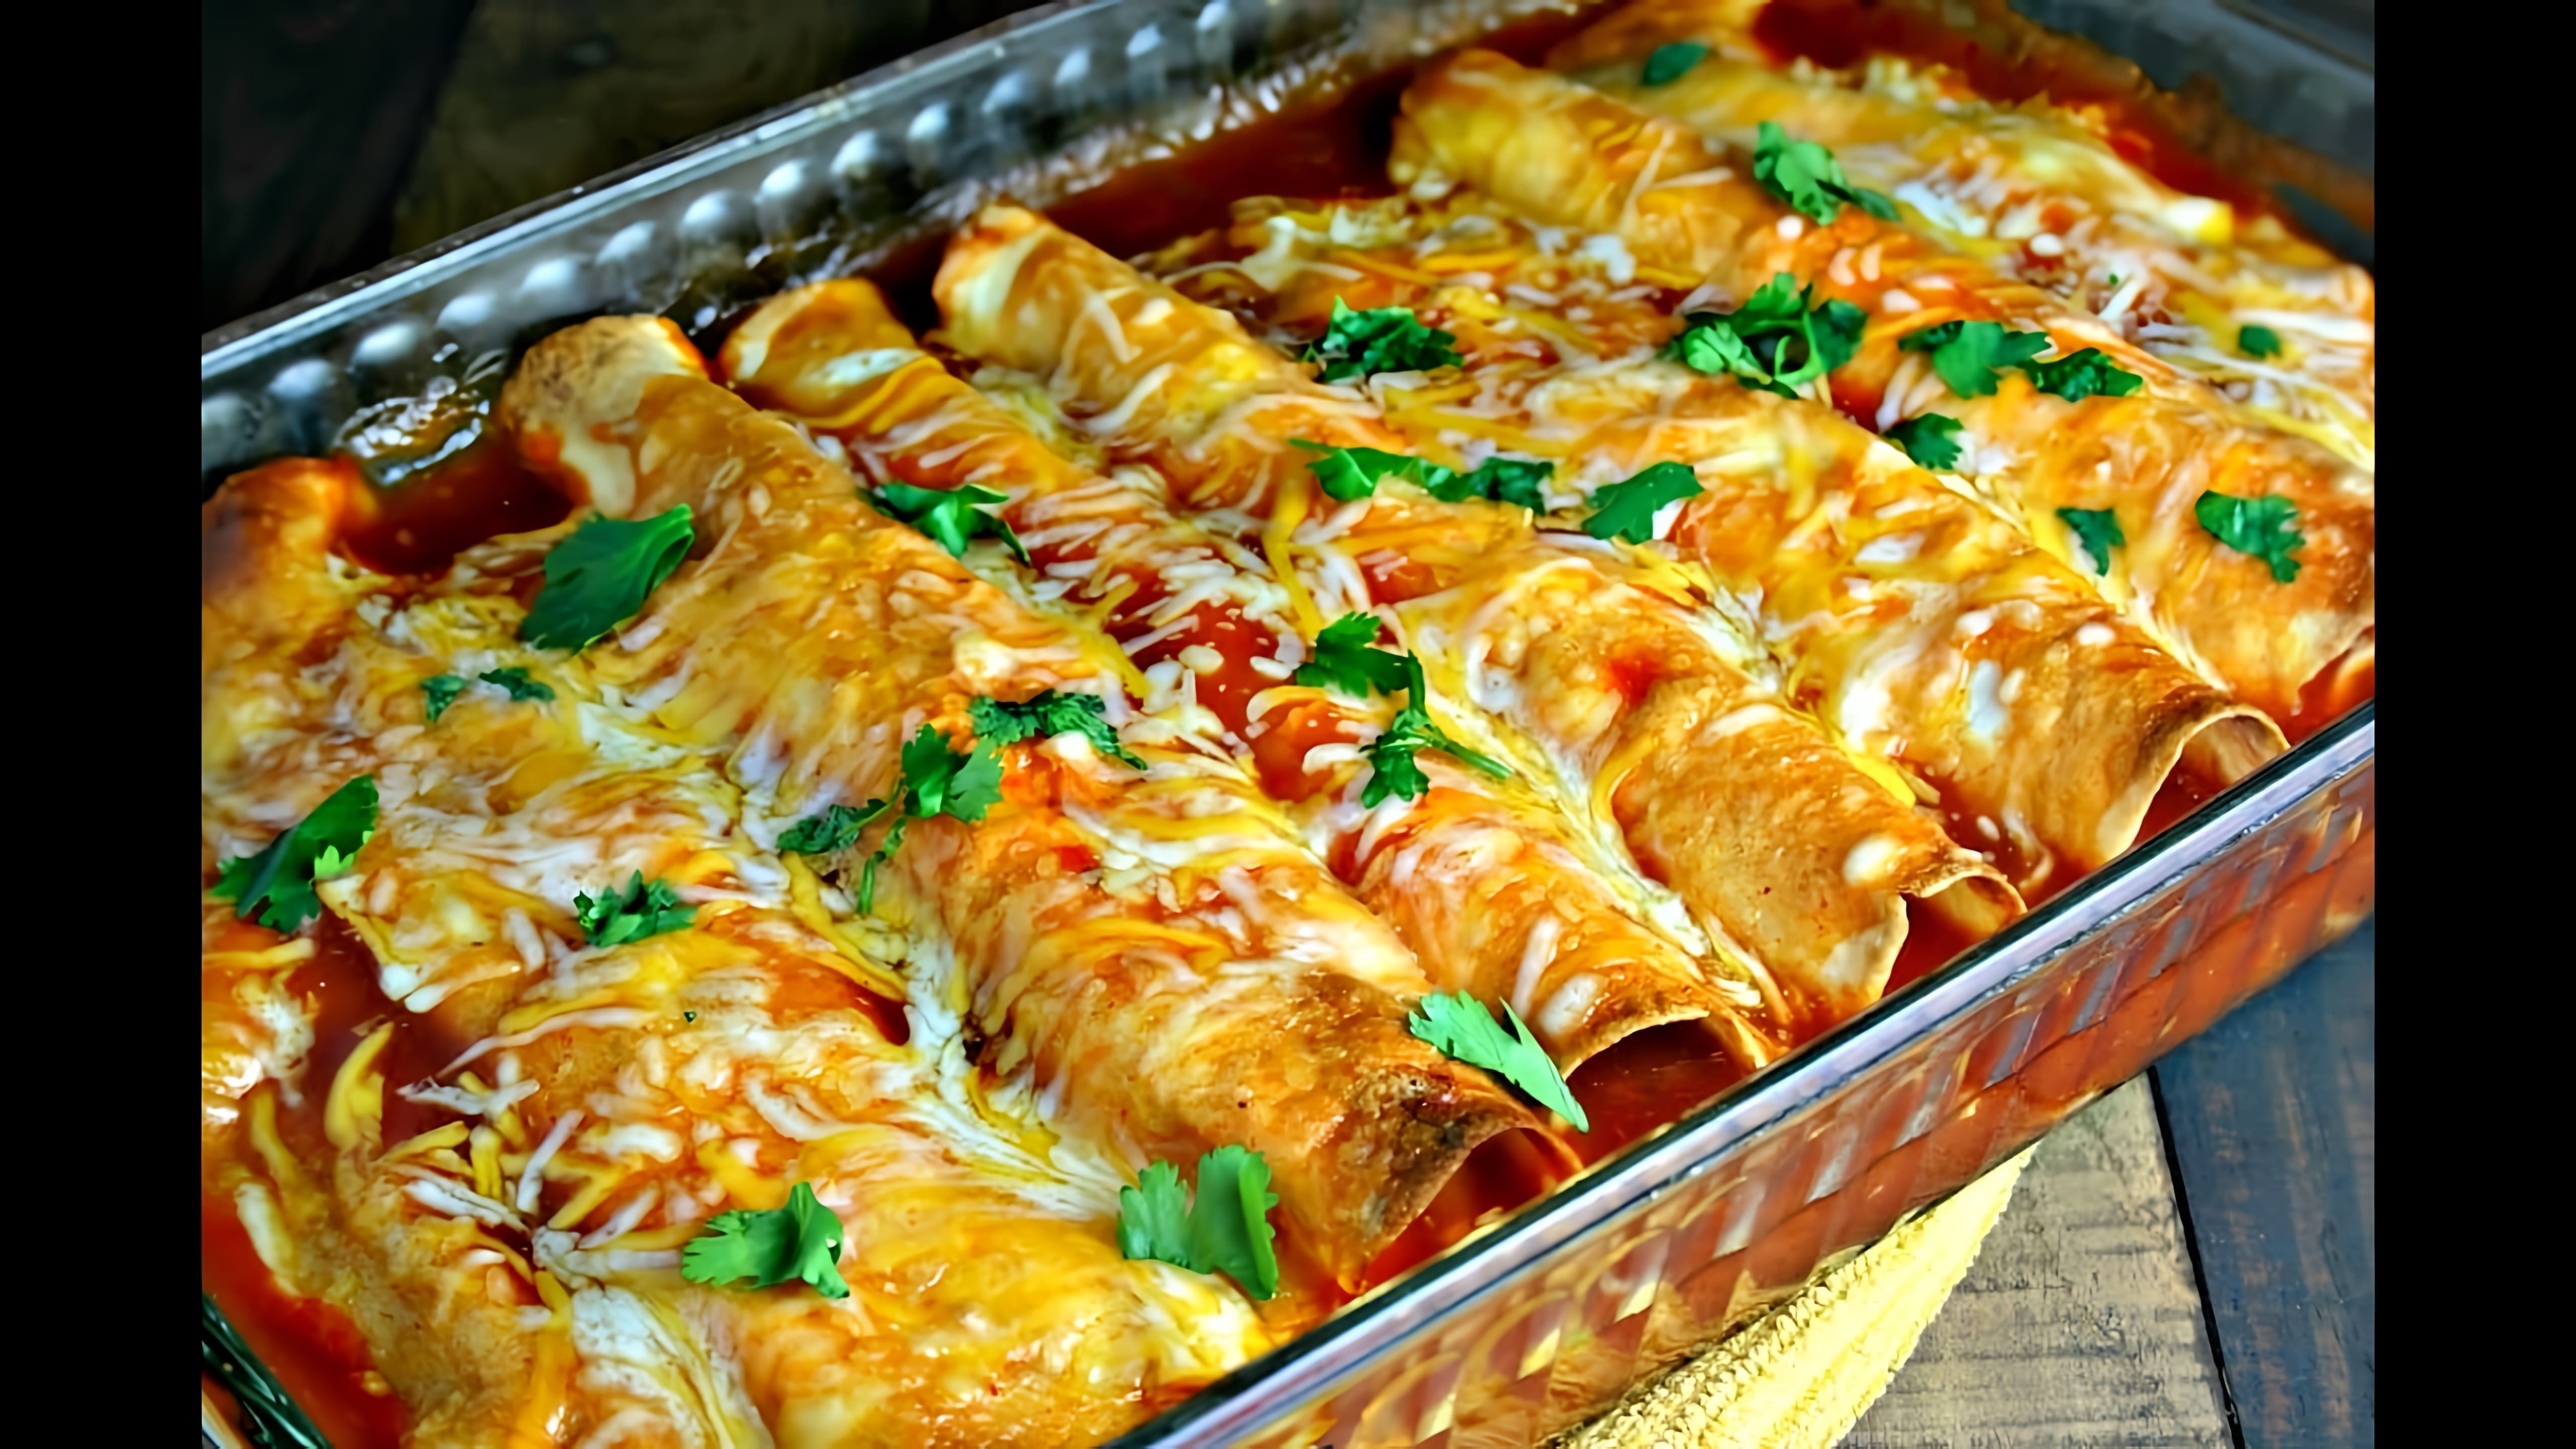 Мексиканская энчилада - это вкусное и простое блюдо, которое можно приготовить дома